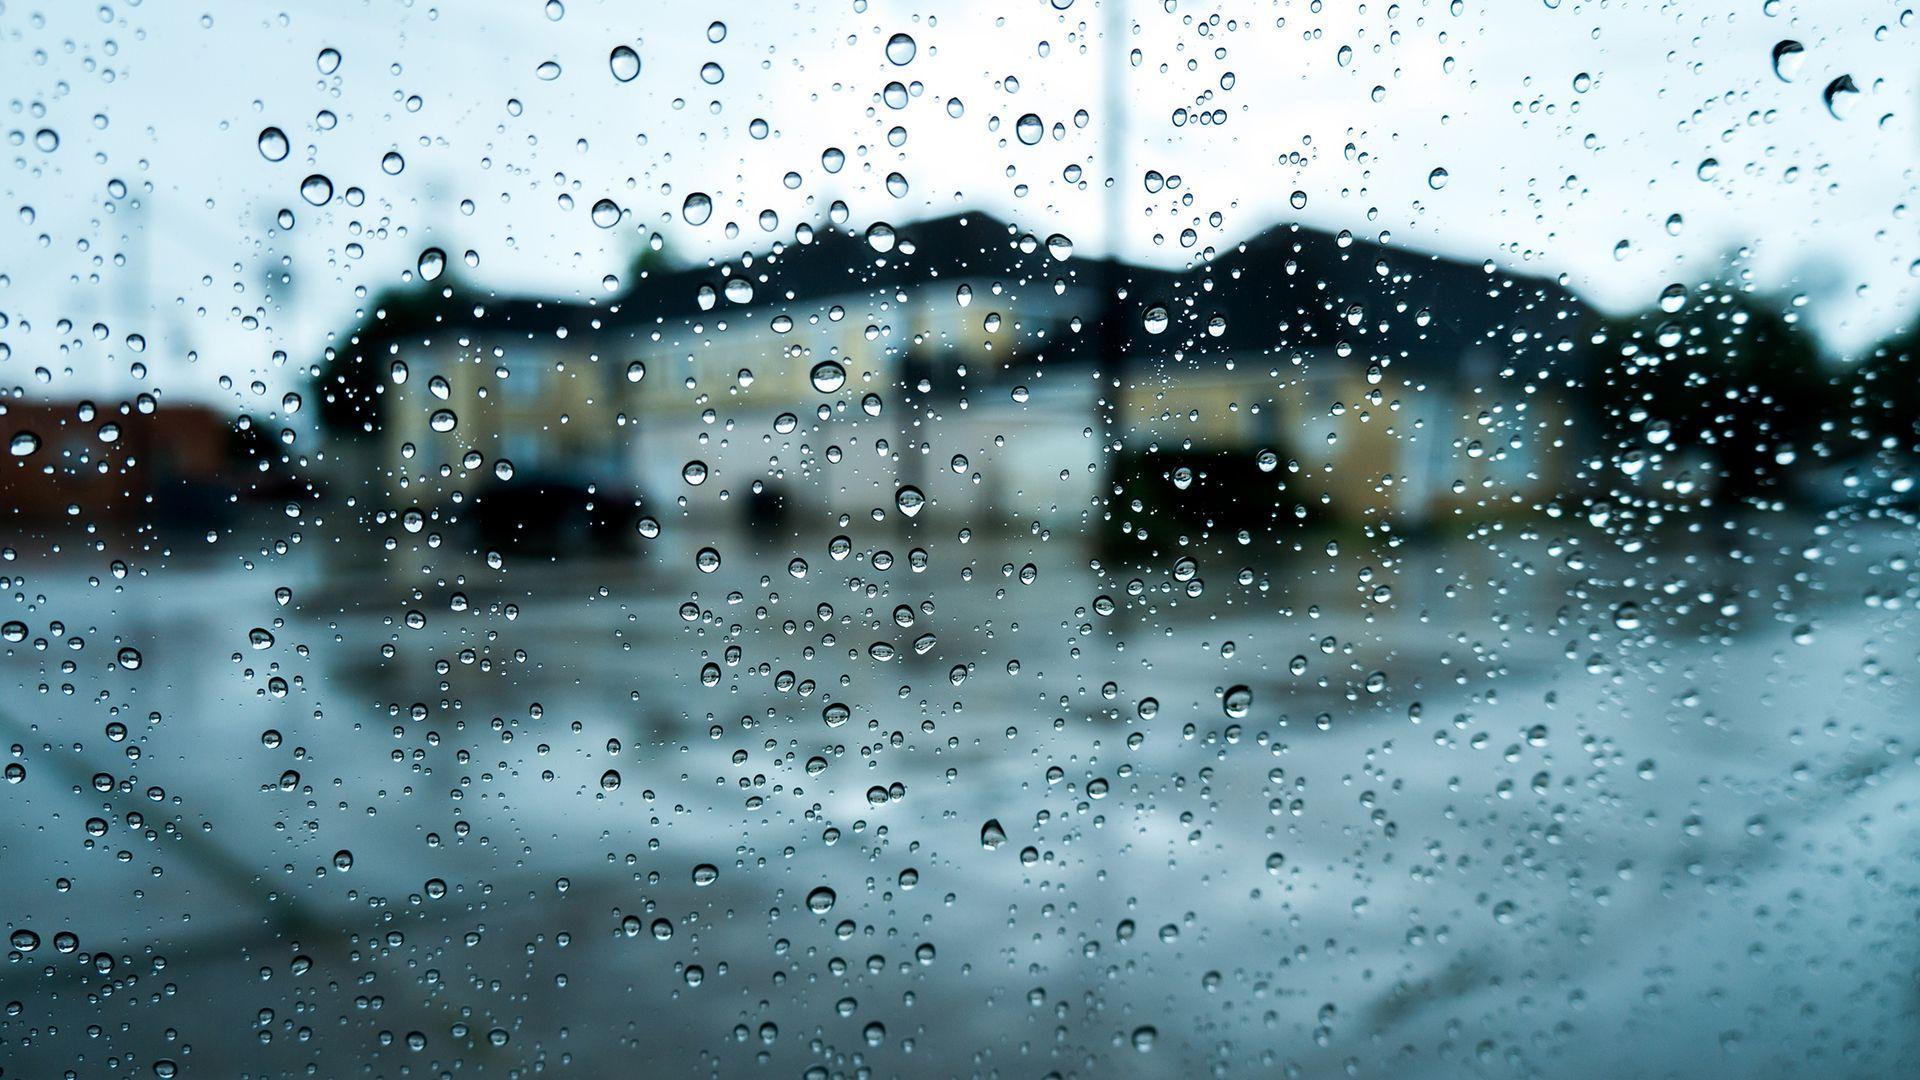 Download Image Of Rain